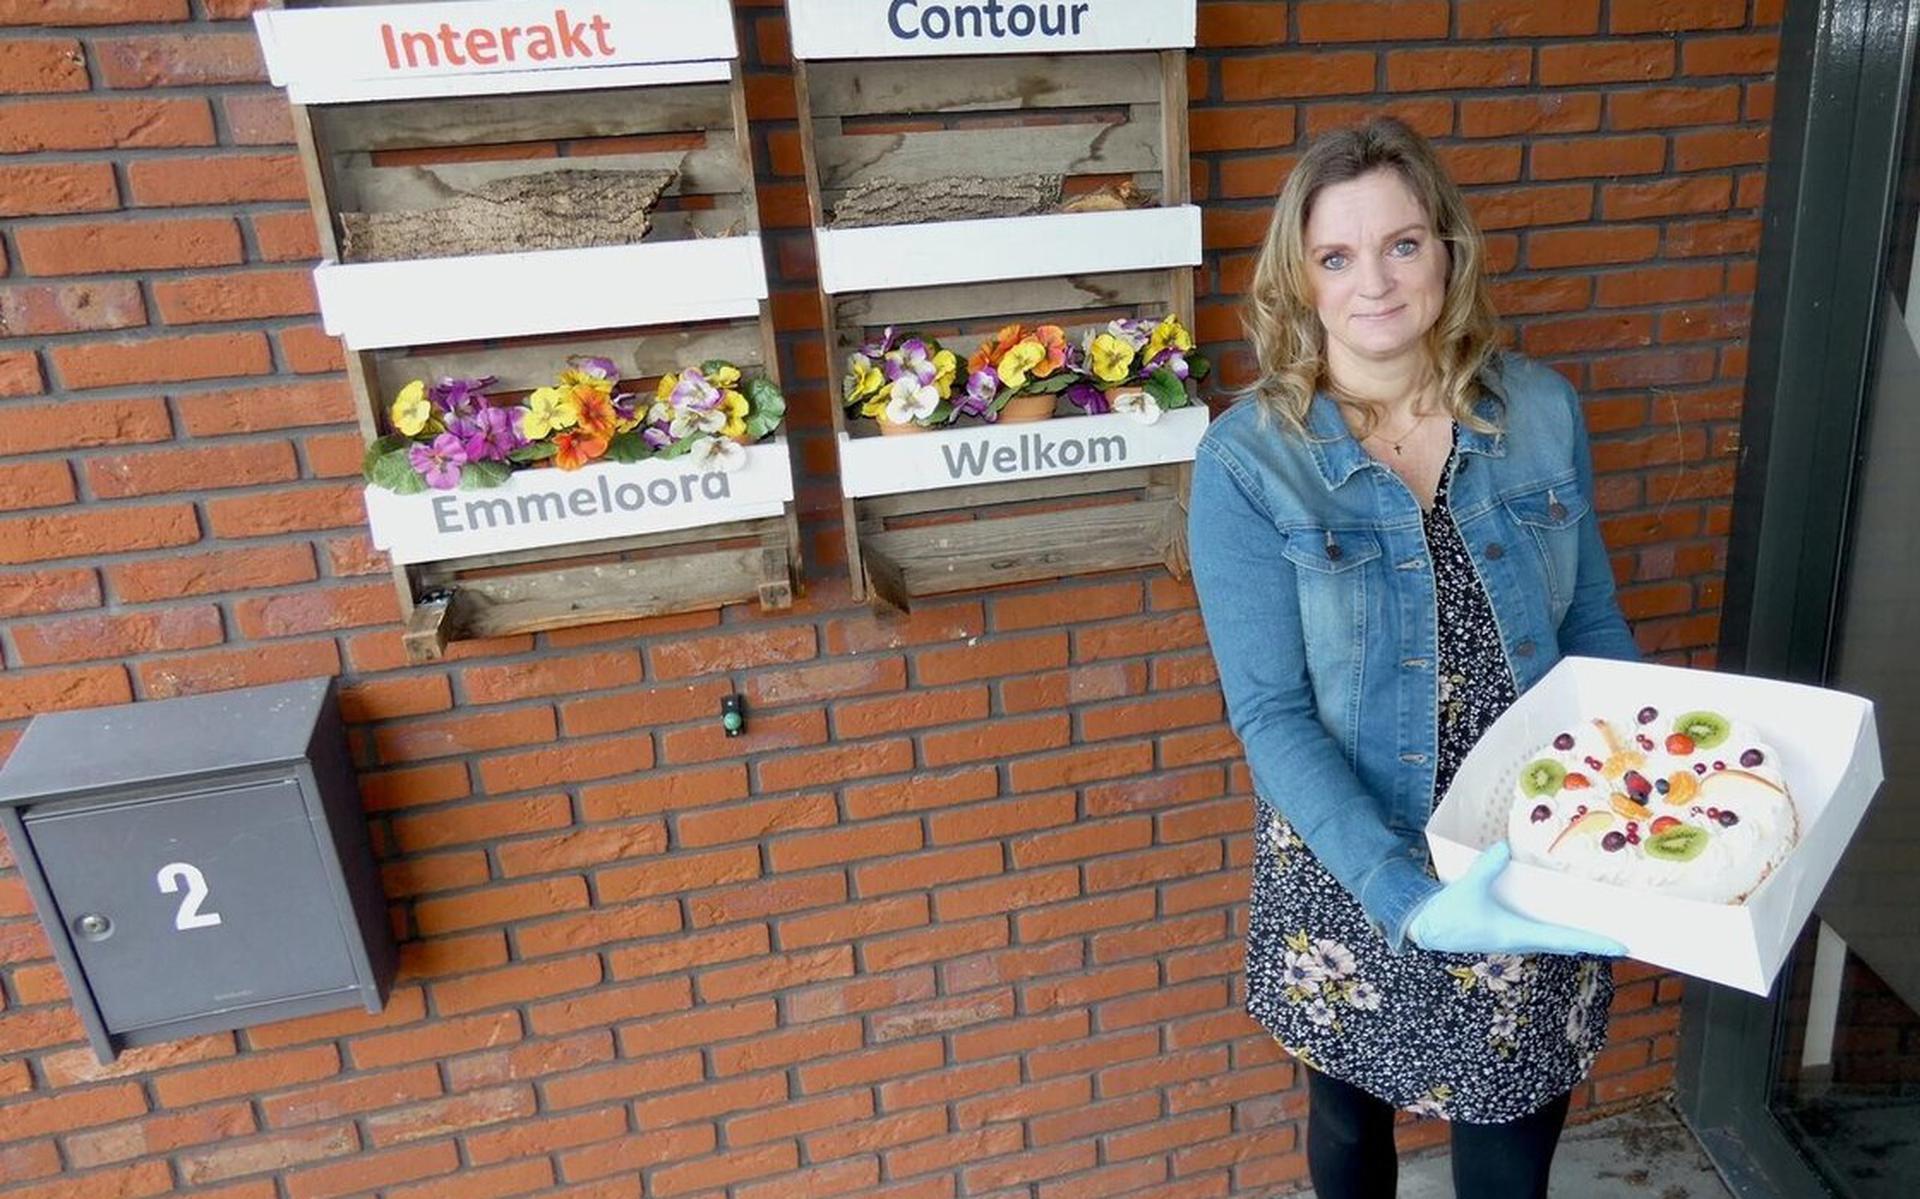 Alice Gnodde van InteraktContour ontvangt een taart van Banketbakkerij Steenbergen.